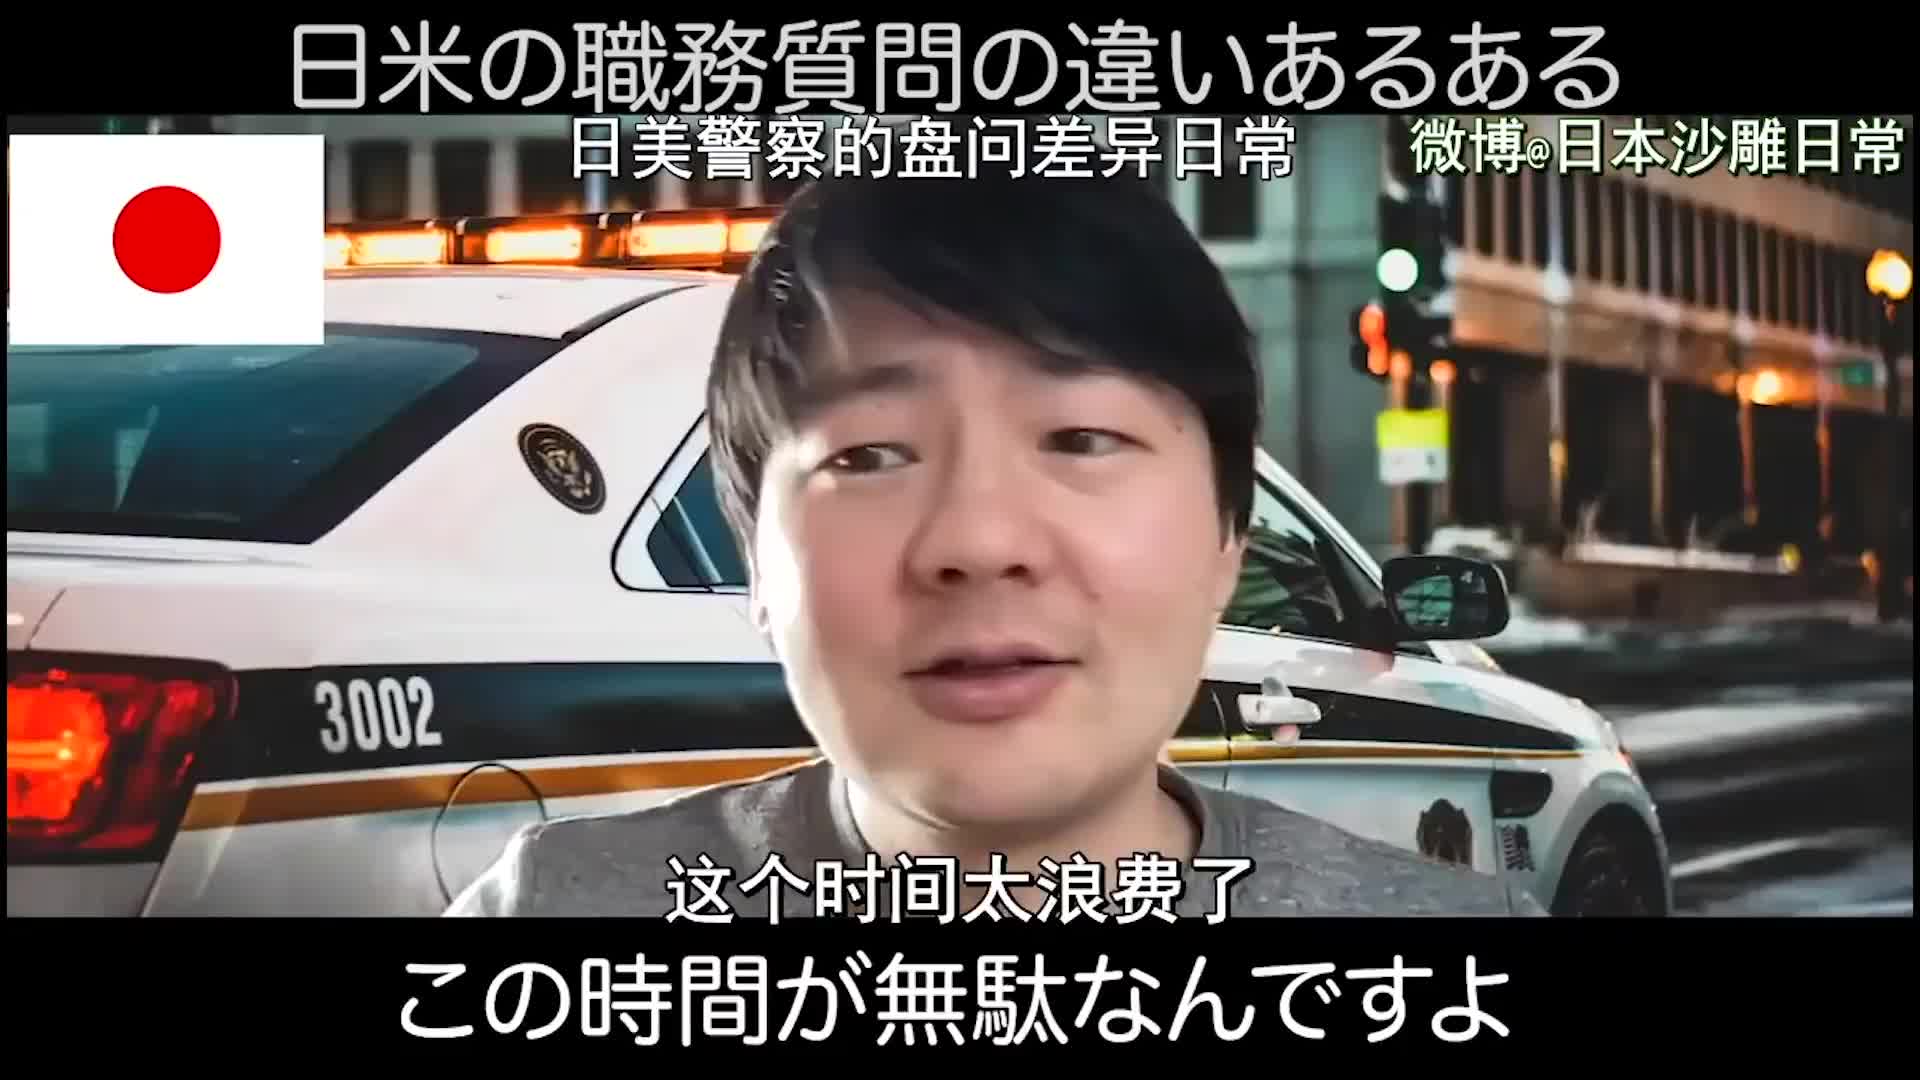 日本网友模仿日美两国警察执法 这表情动作太传神了